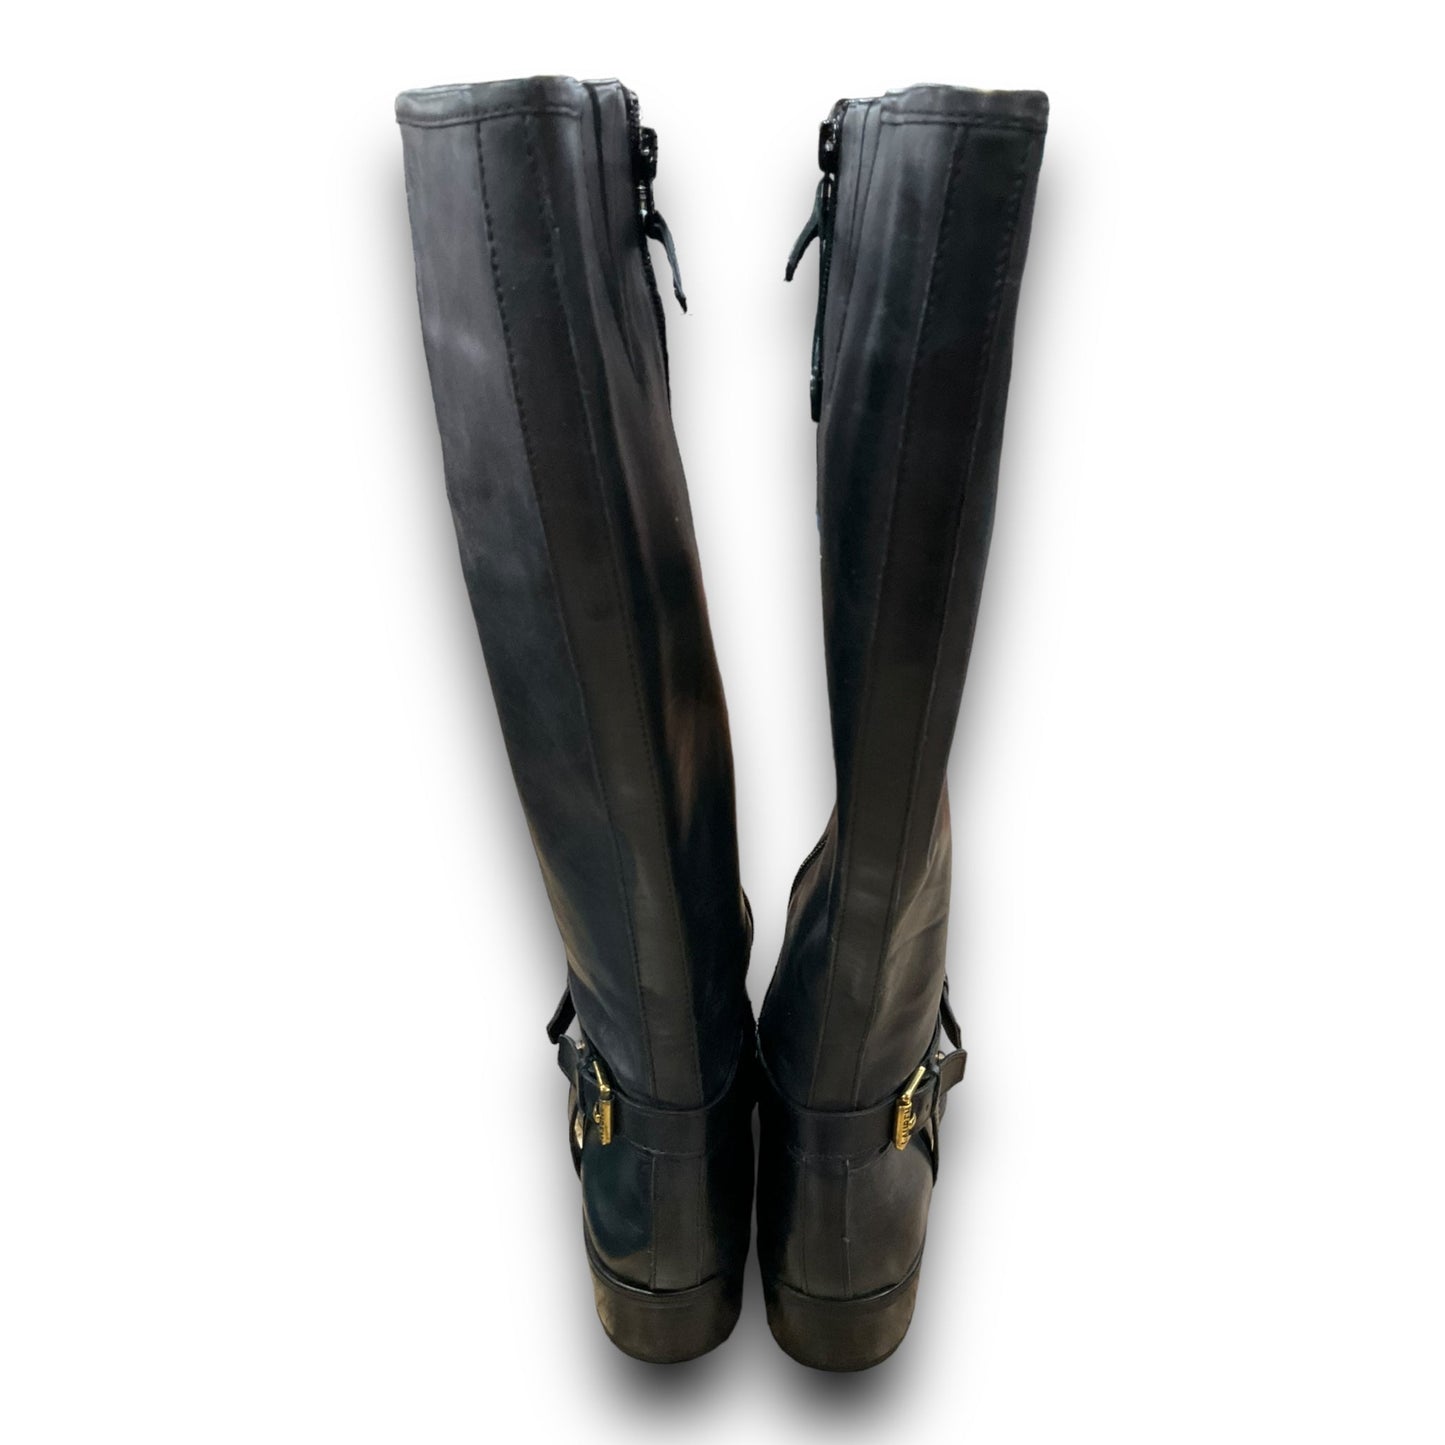 Boots Knee Flats By Lauren By Ralph Lauren  Size: 8.5